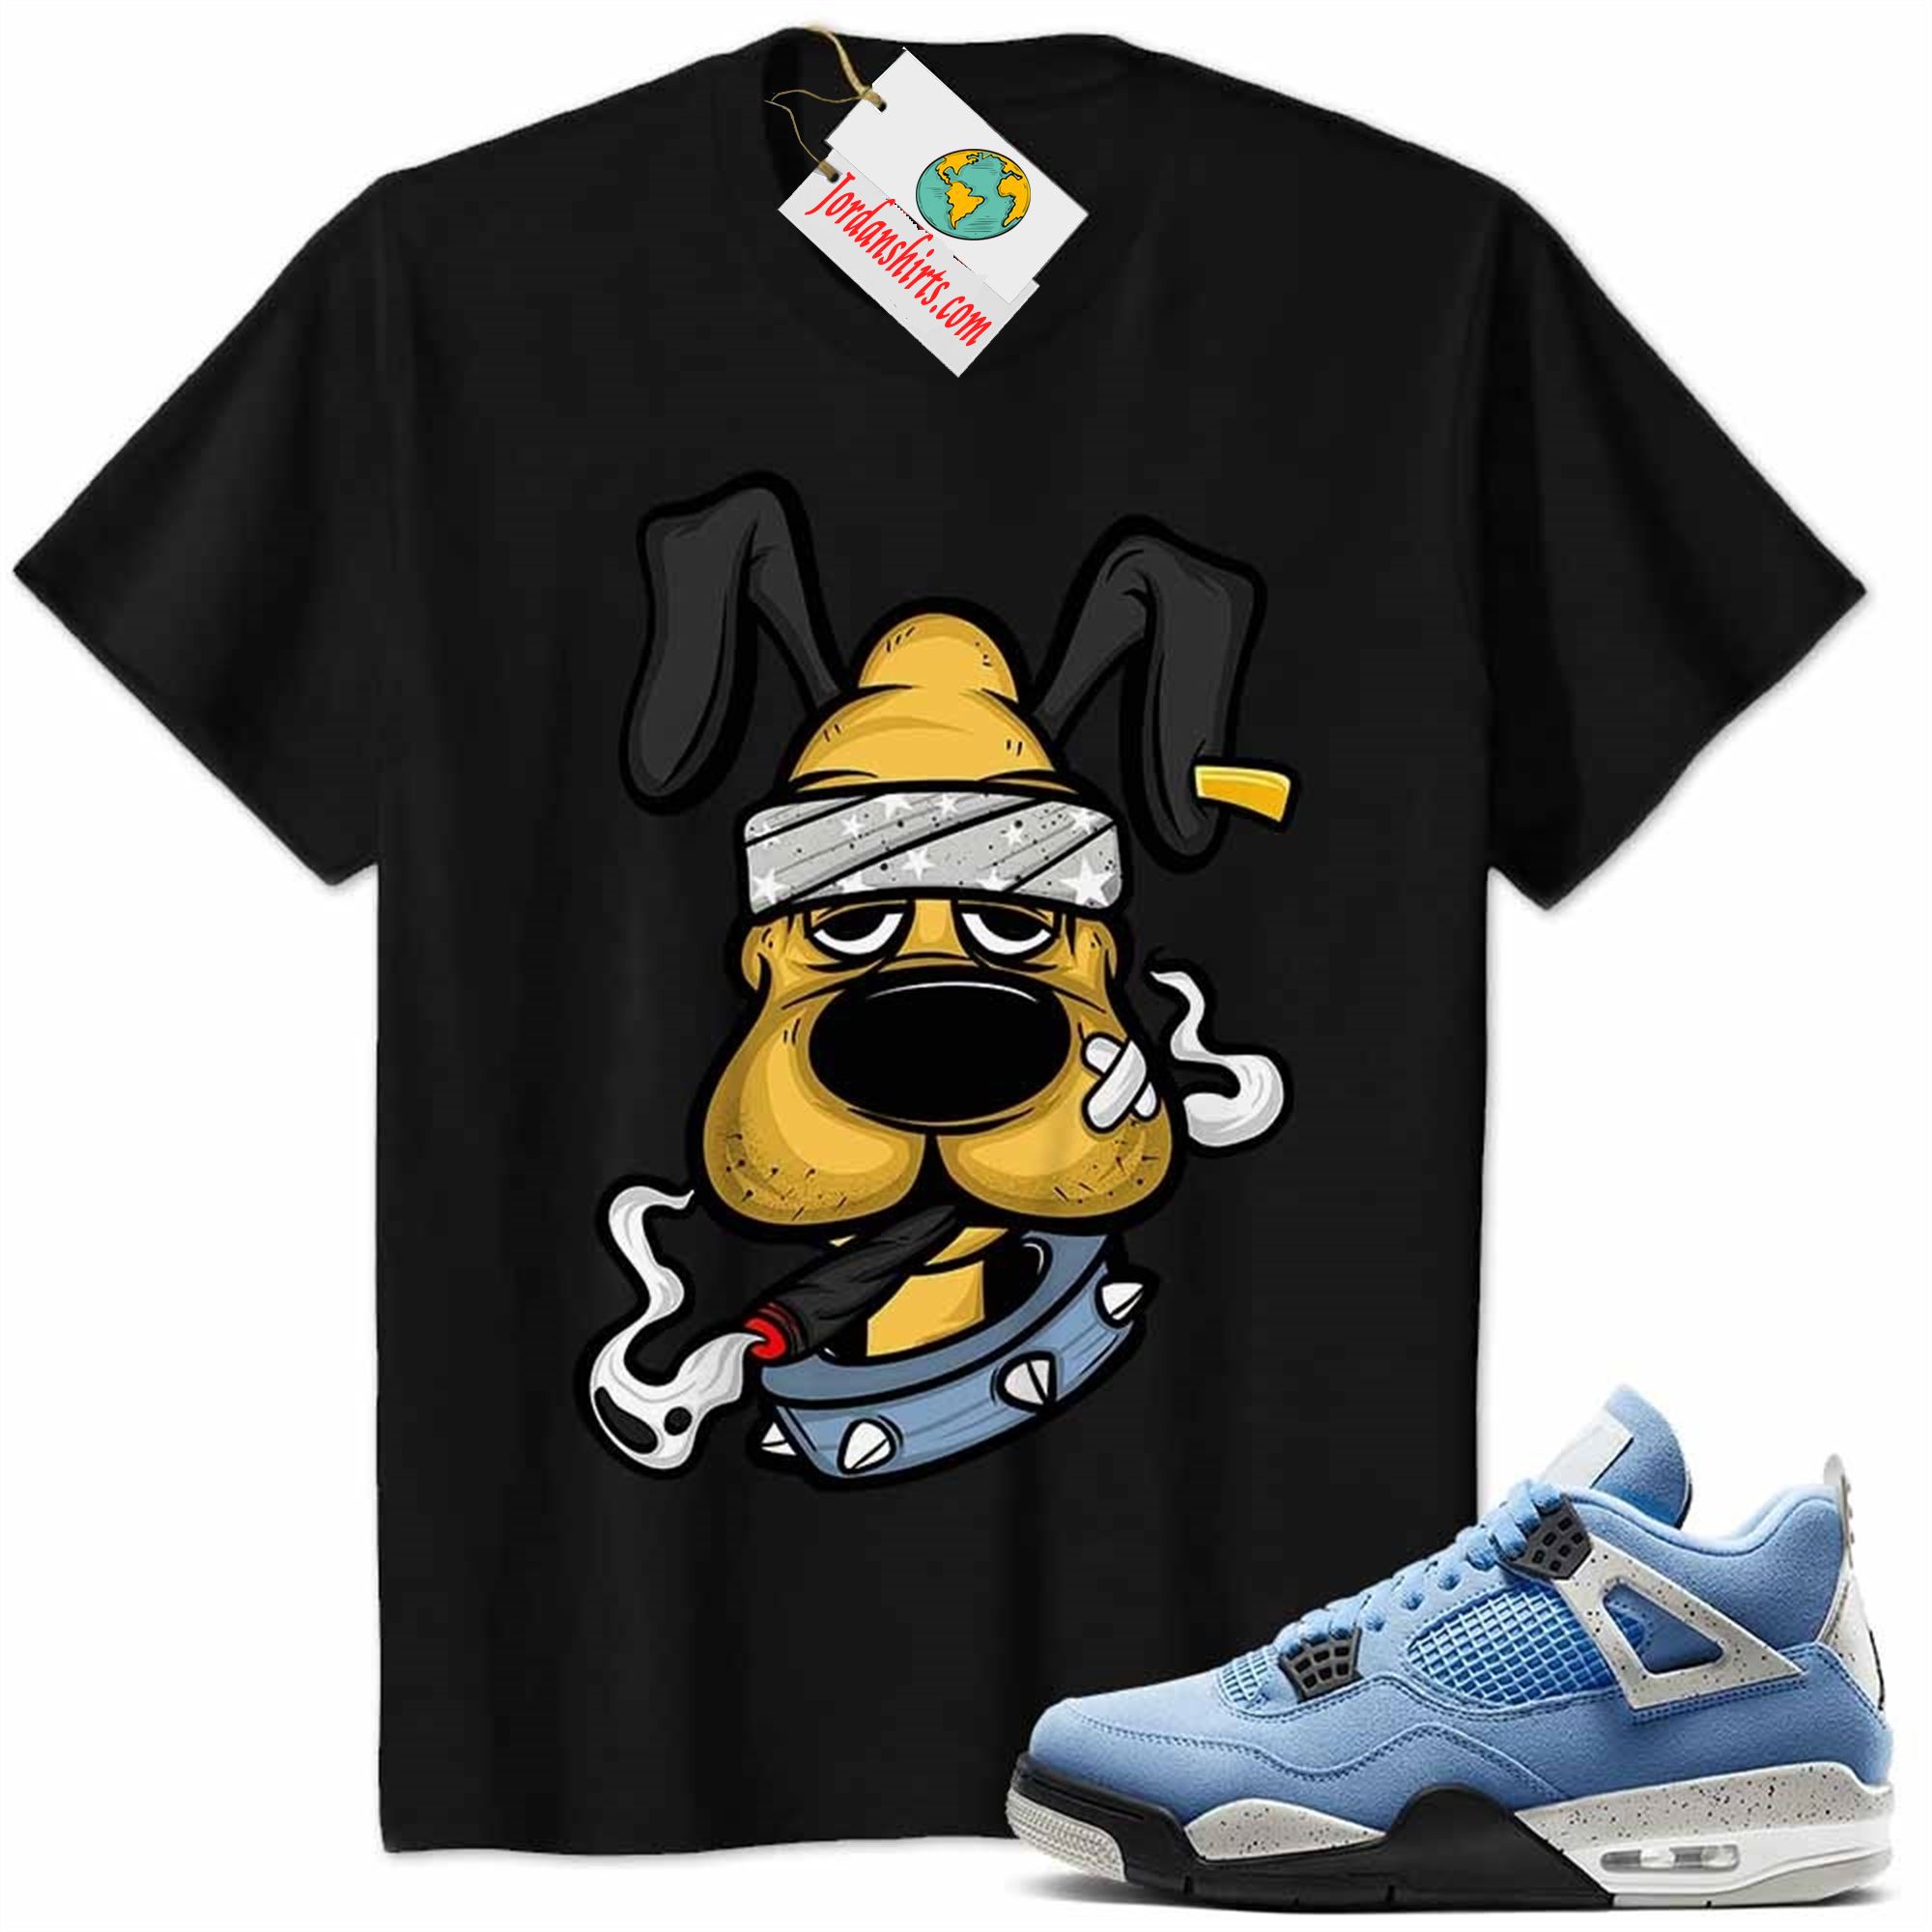 Jordan 4 Shirt, Gangster Pluto Smoke Weed Black Air Jordan 4 University Blue 4s Plus Size Up To 5xl